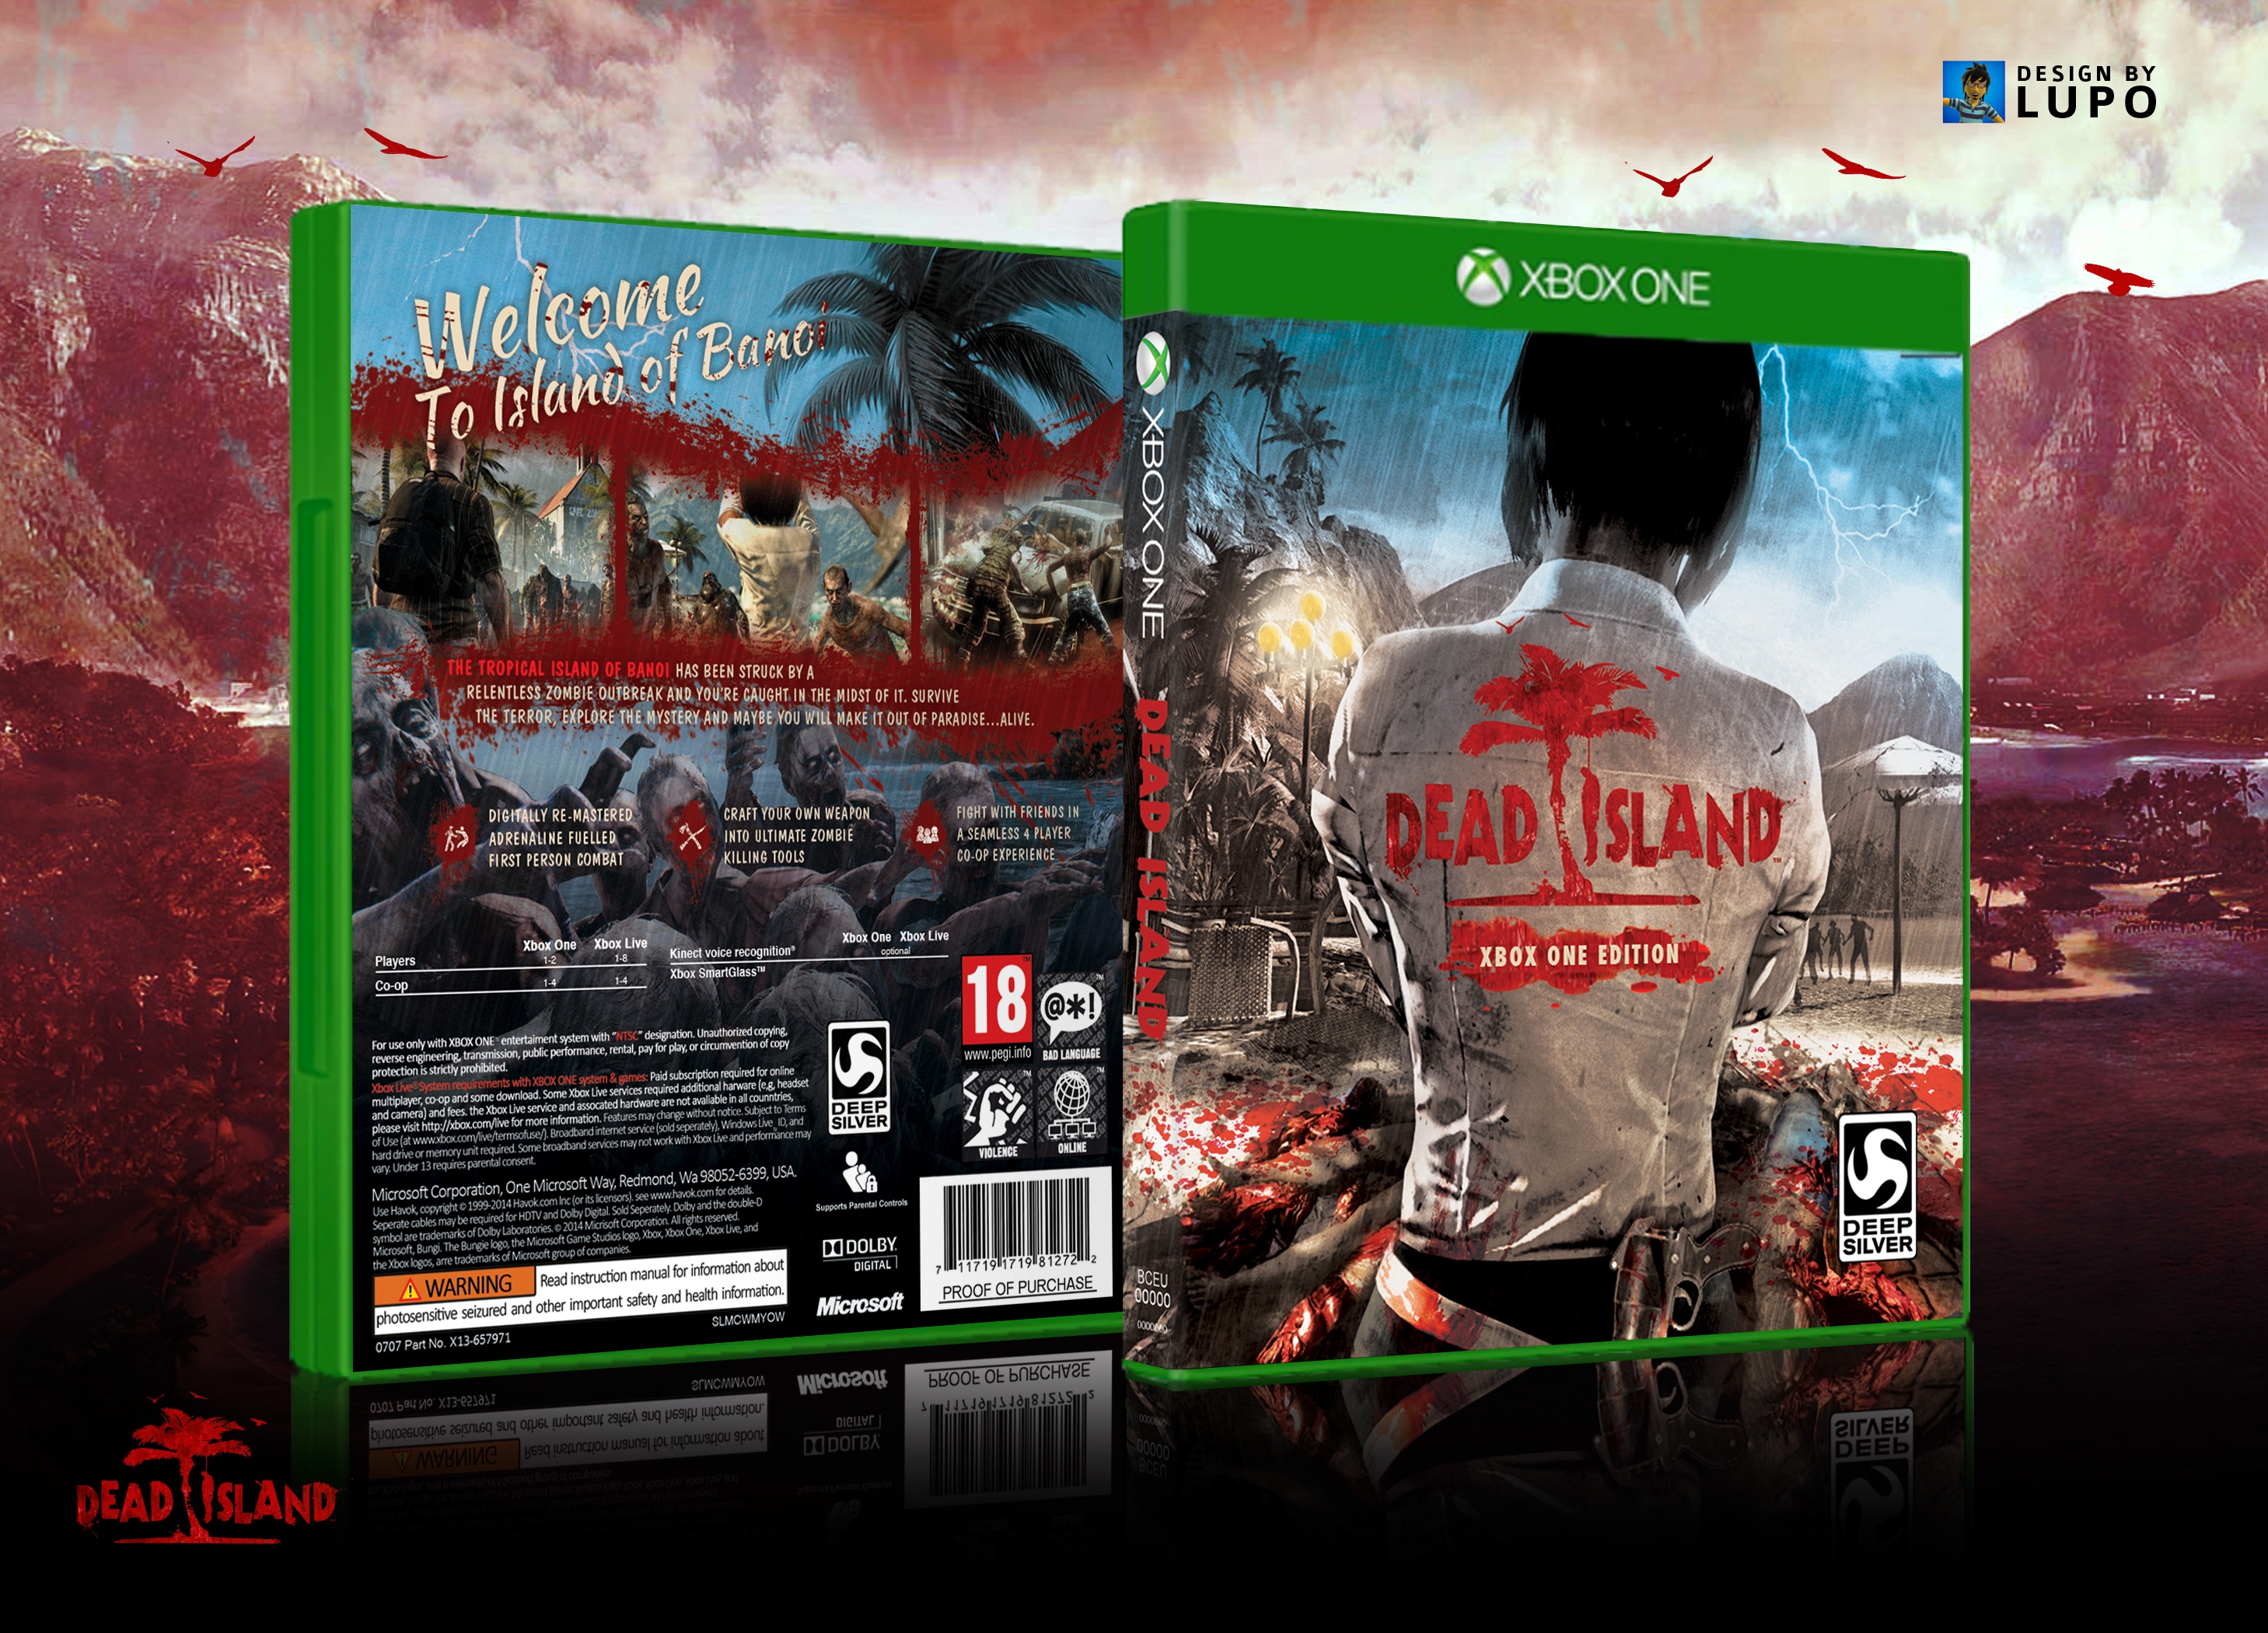 Dead Island Xbox one Edition box cover